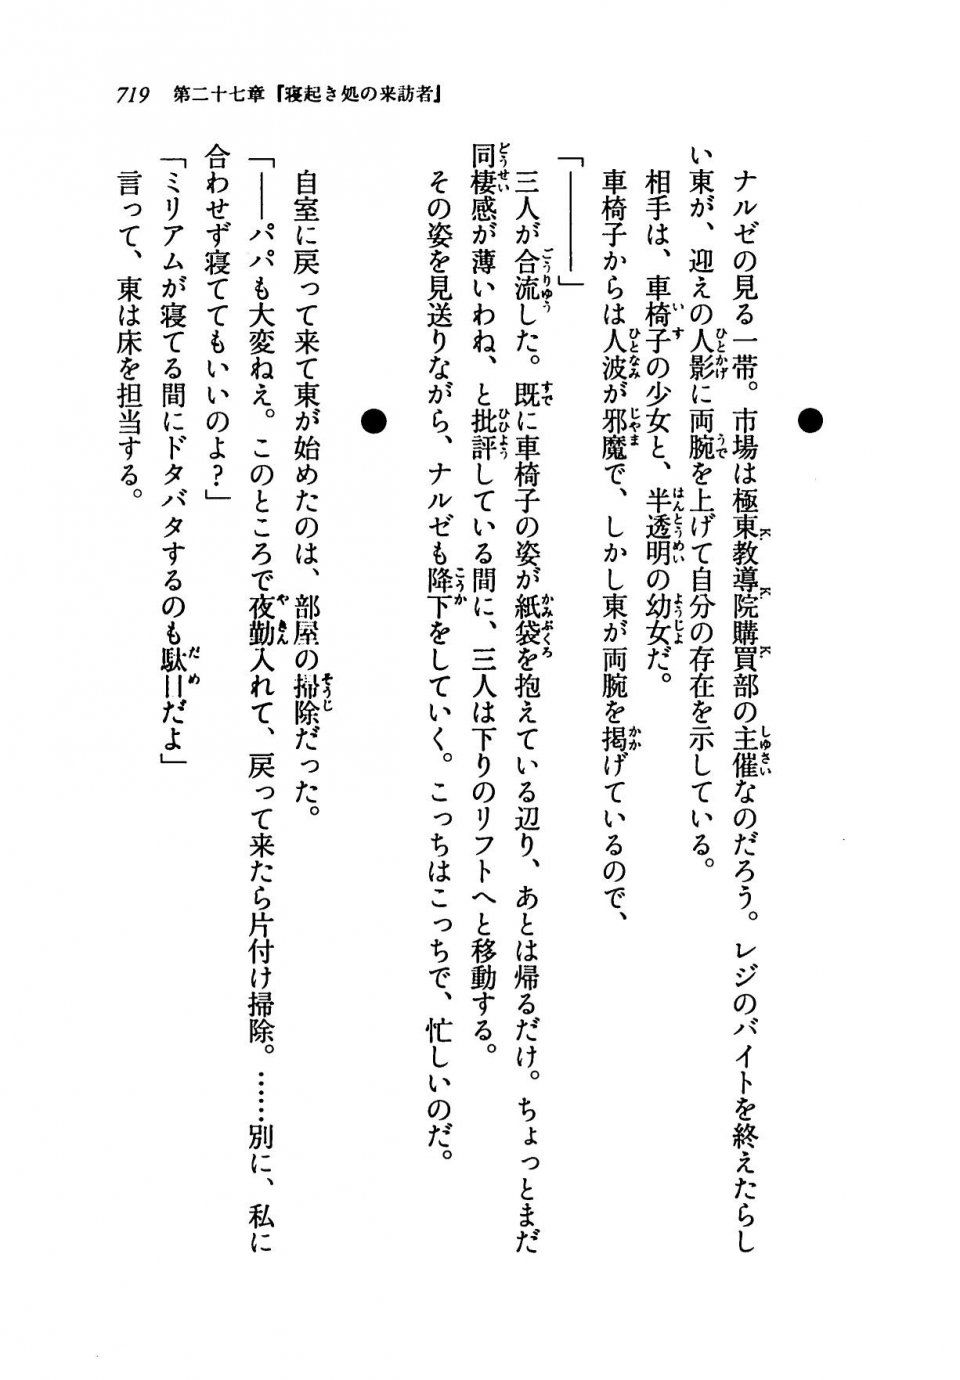 Kyoukai Senjou no Horizon LN Vol 19(8A) - Photo #719